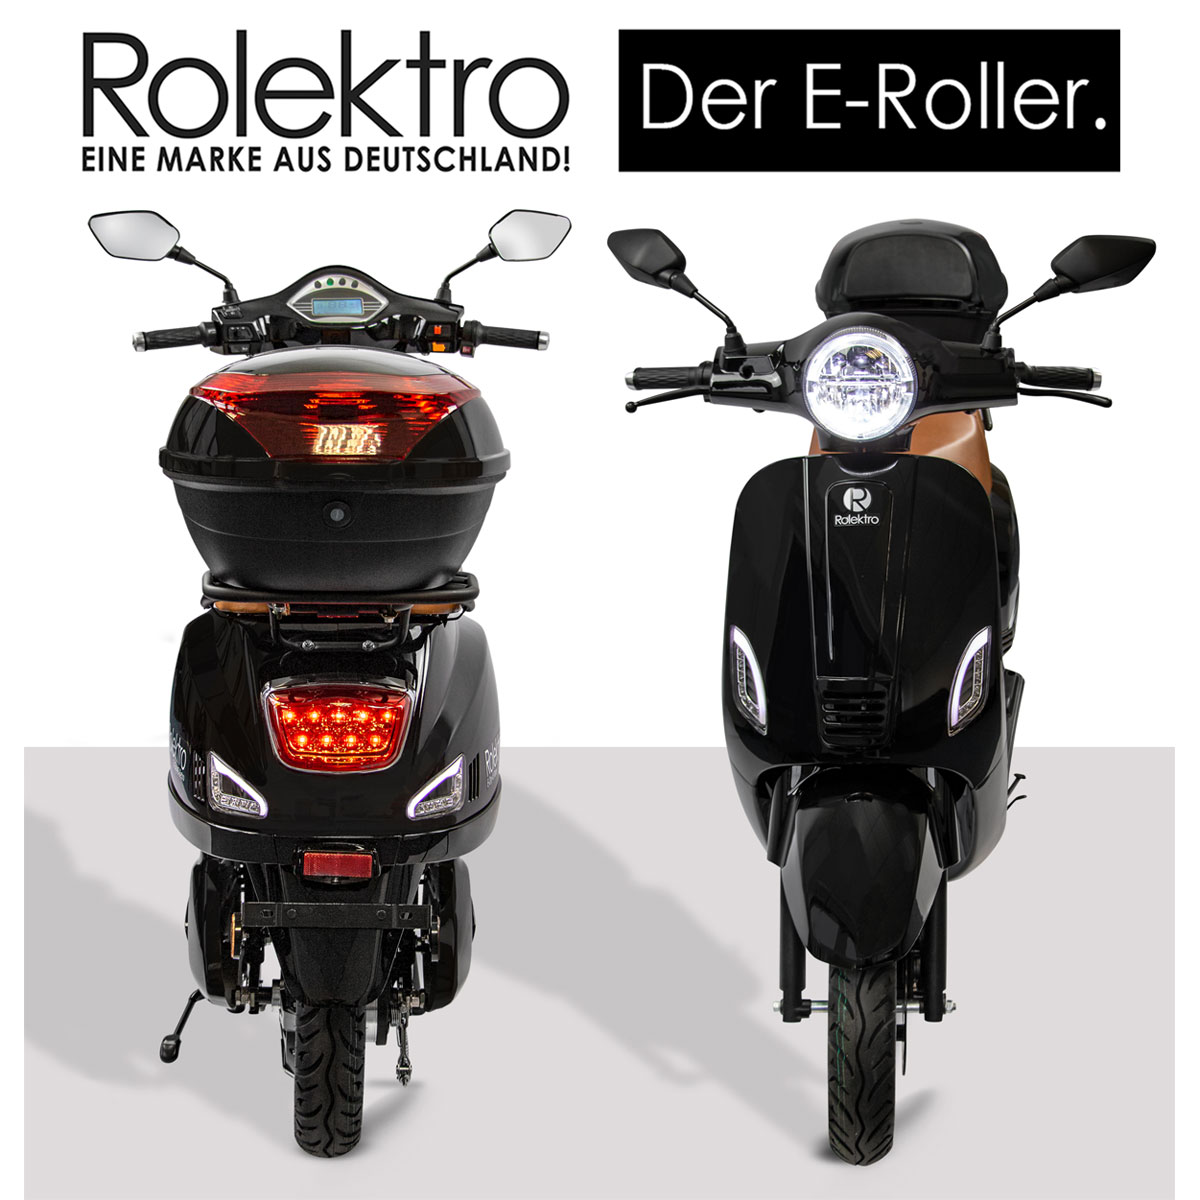 K000628988 45 Retro Roller Lithium km/h Schwarz E-Roller 2000W 60V-27,5Ah | Rolektro V.2021